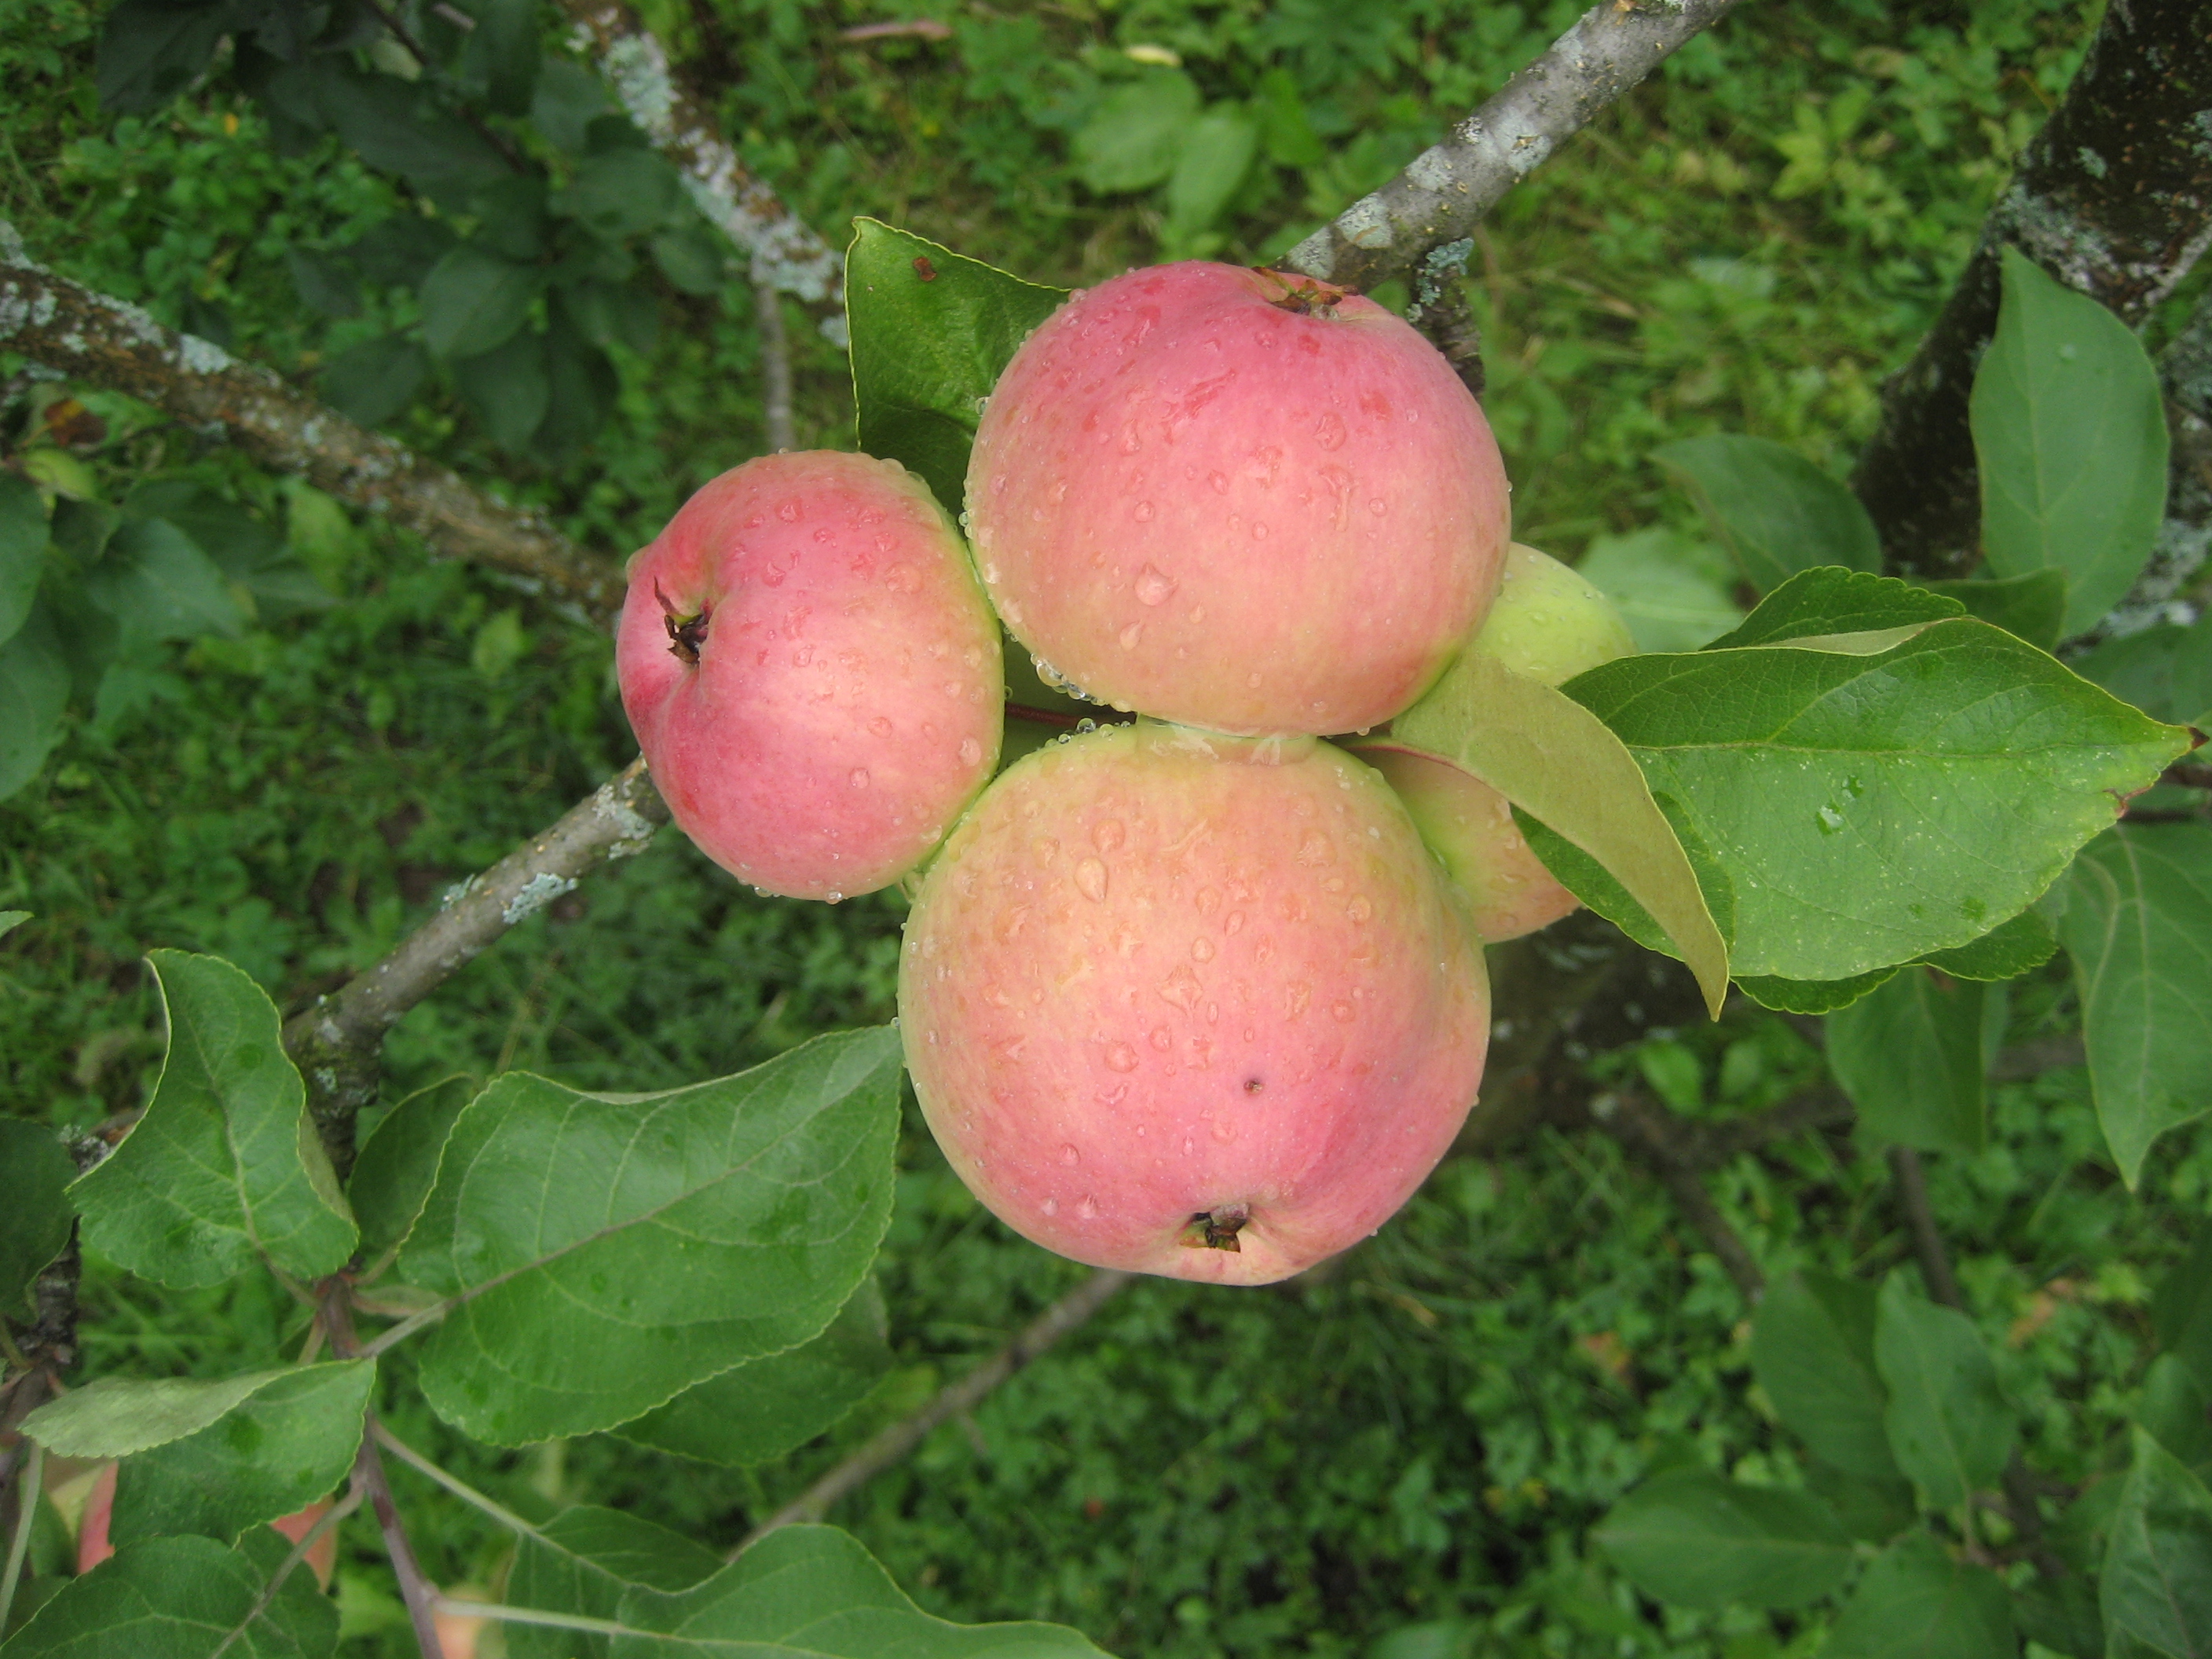 Московская грушовка яблоня фото и описание сорта